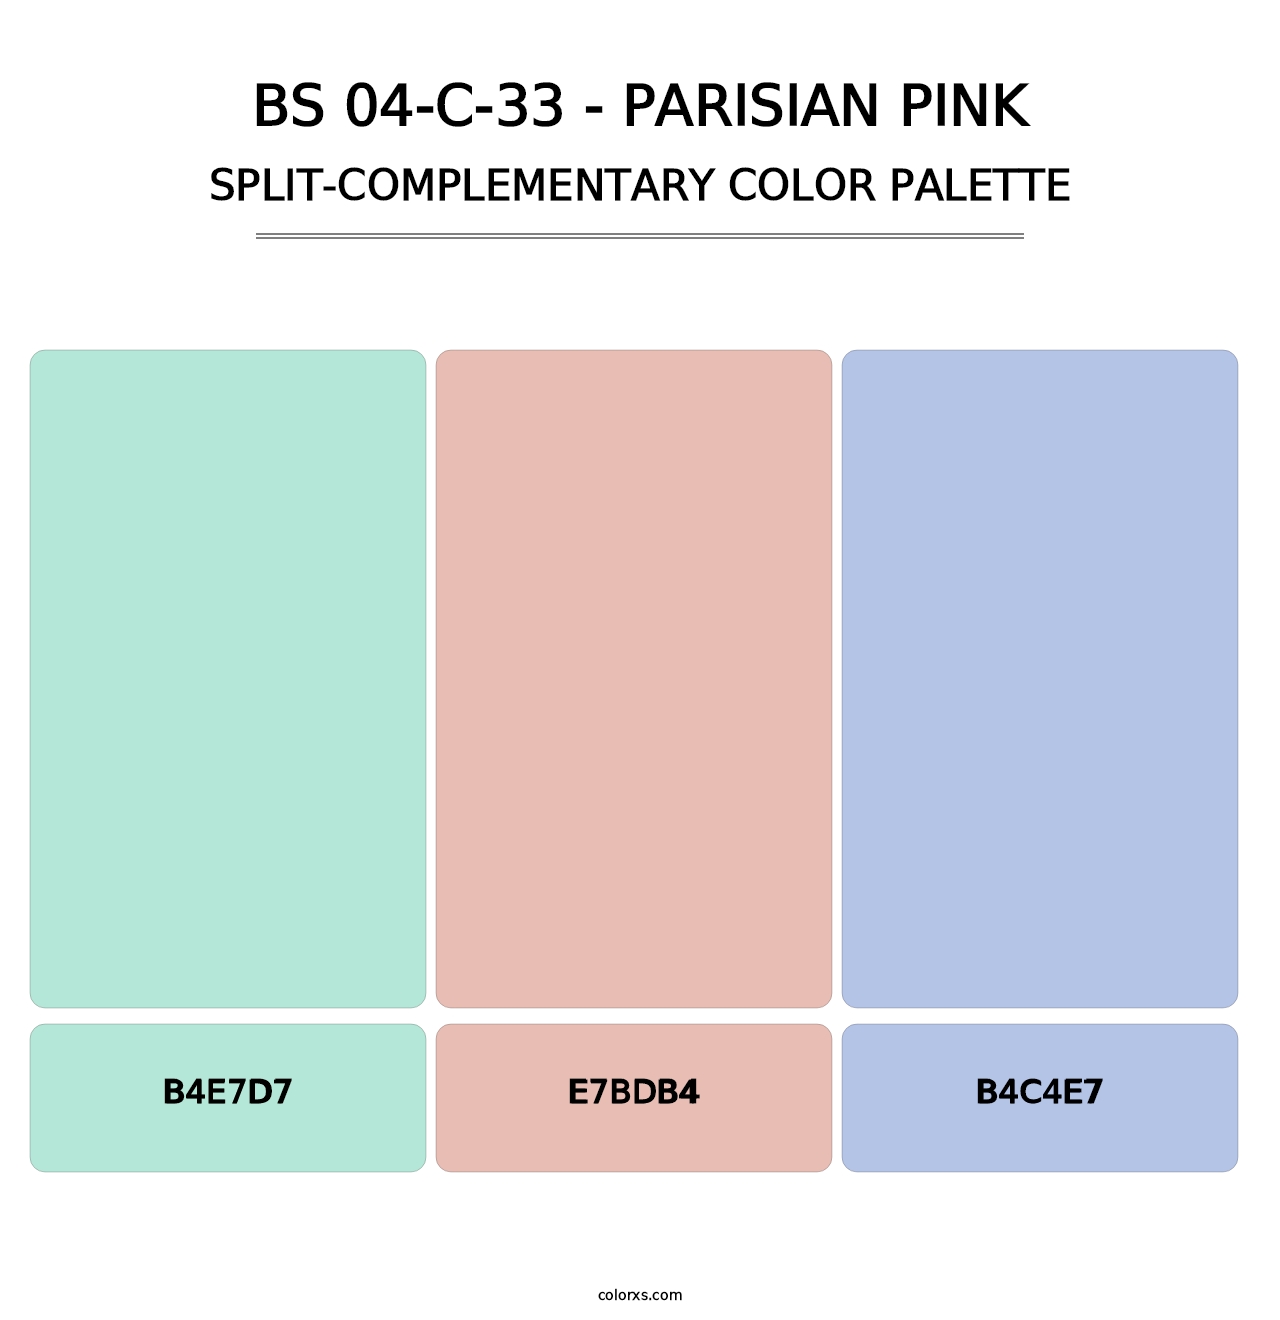 BS 04-C-33 - Parisian Pink - Split-Complementary Color Palette